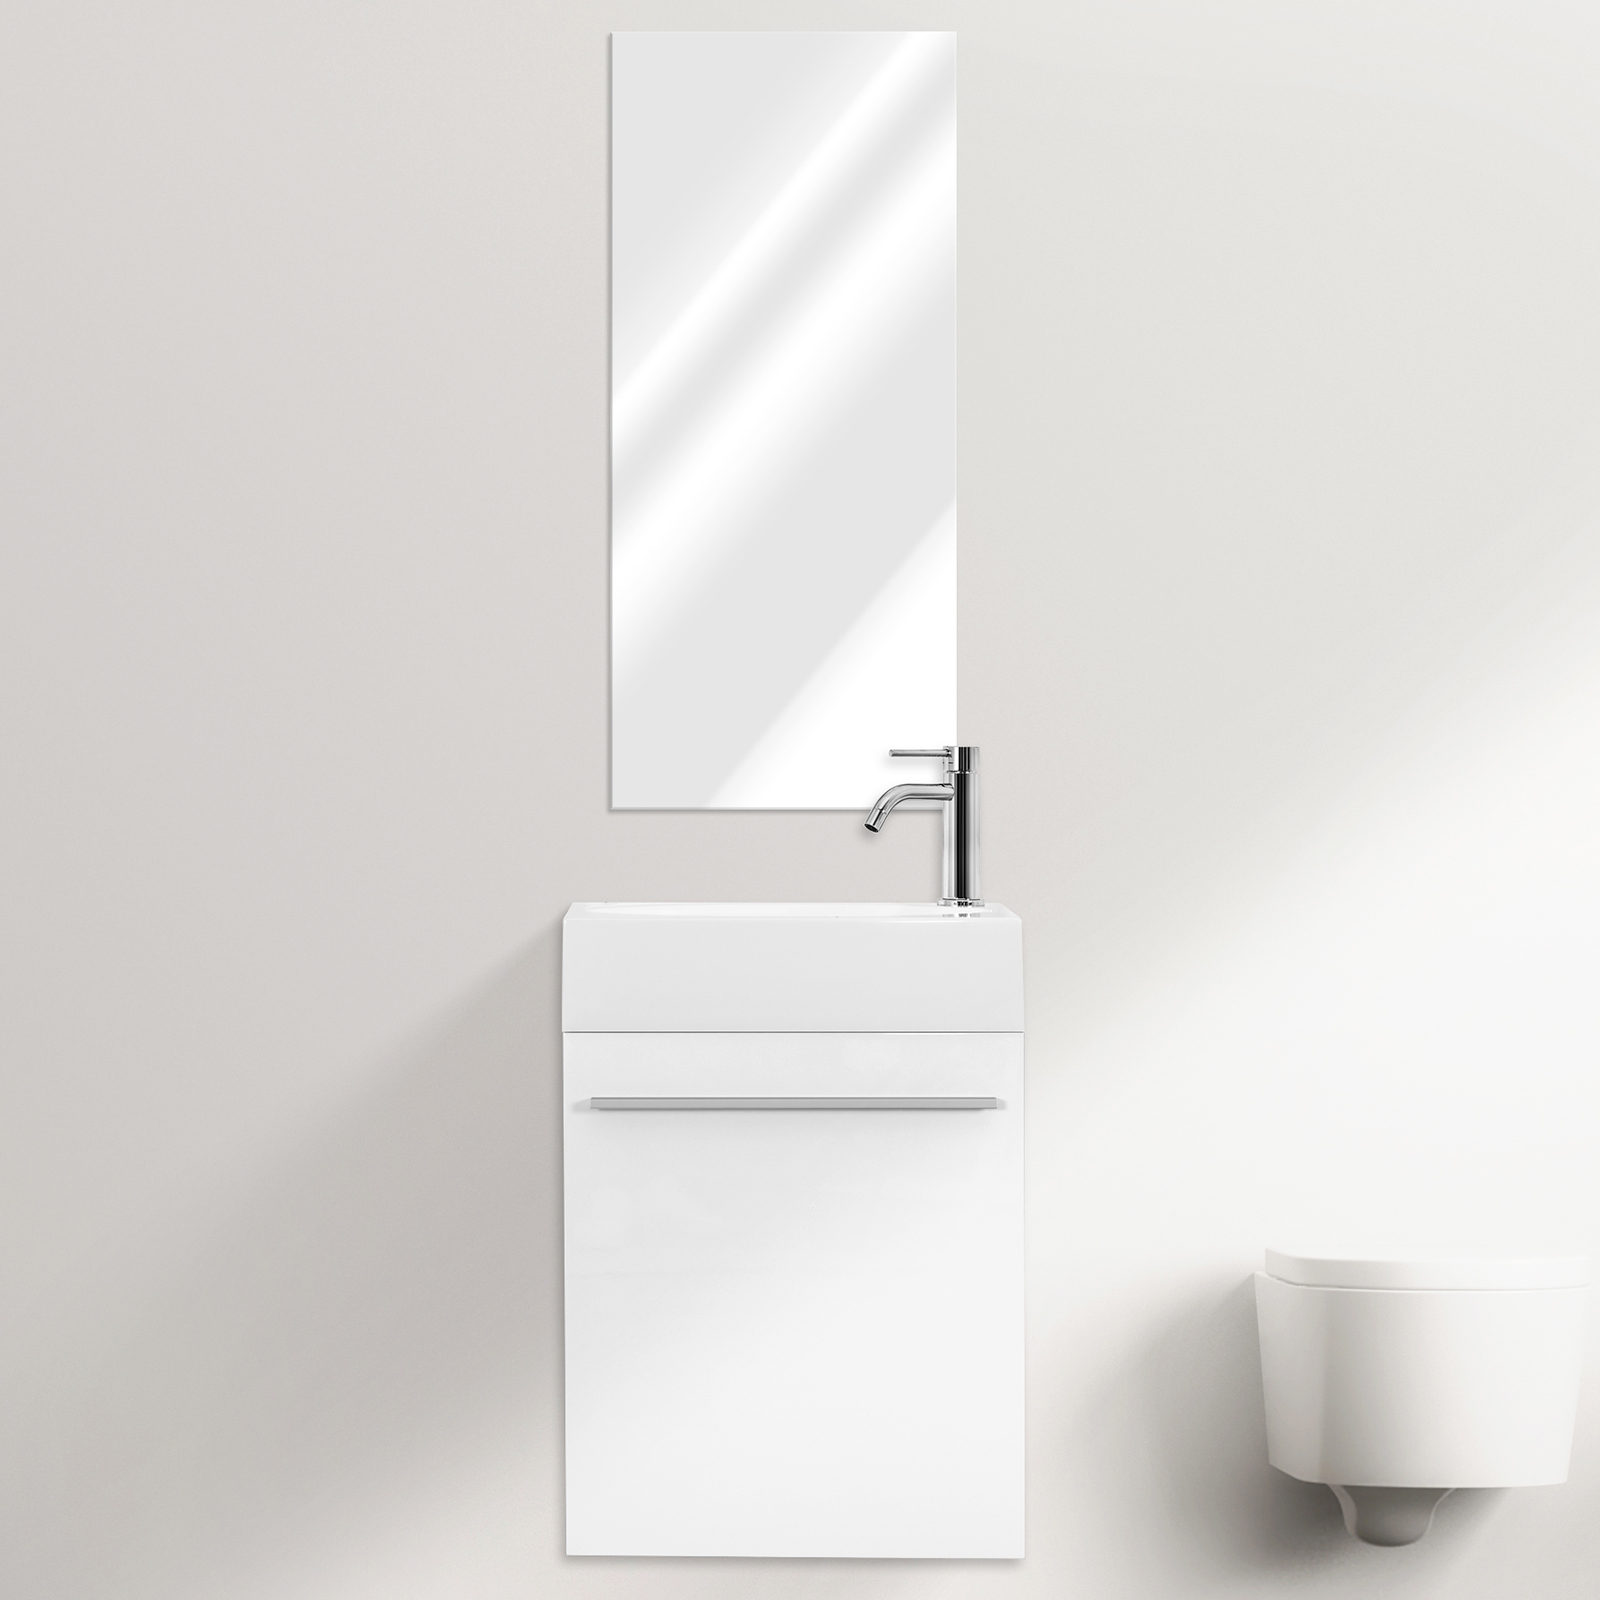 Wall-hung-bathroom-vanity-Karma-3_1542124600_717